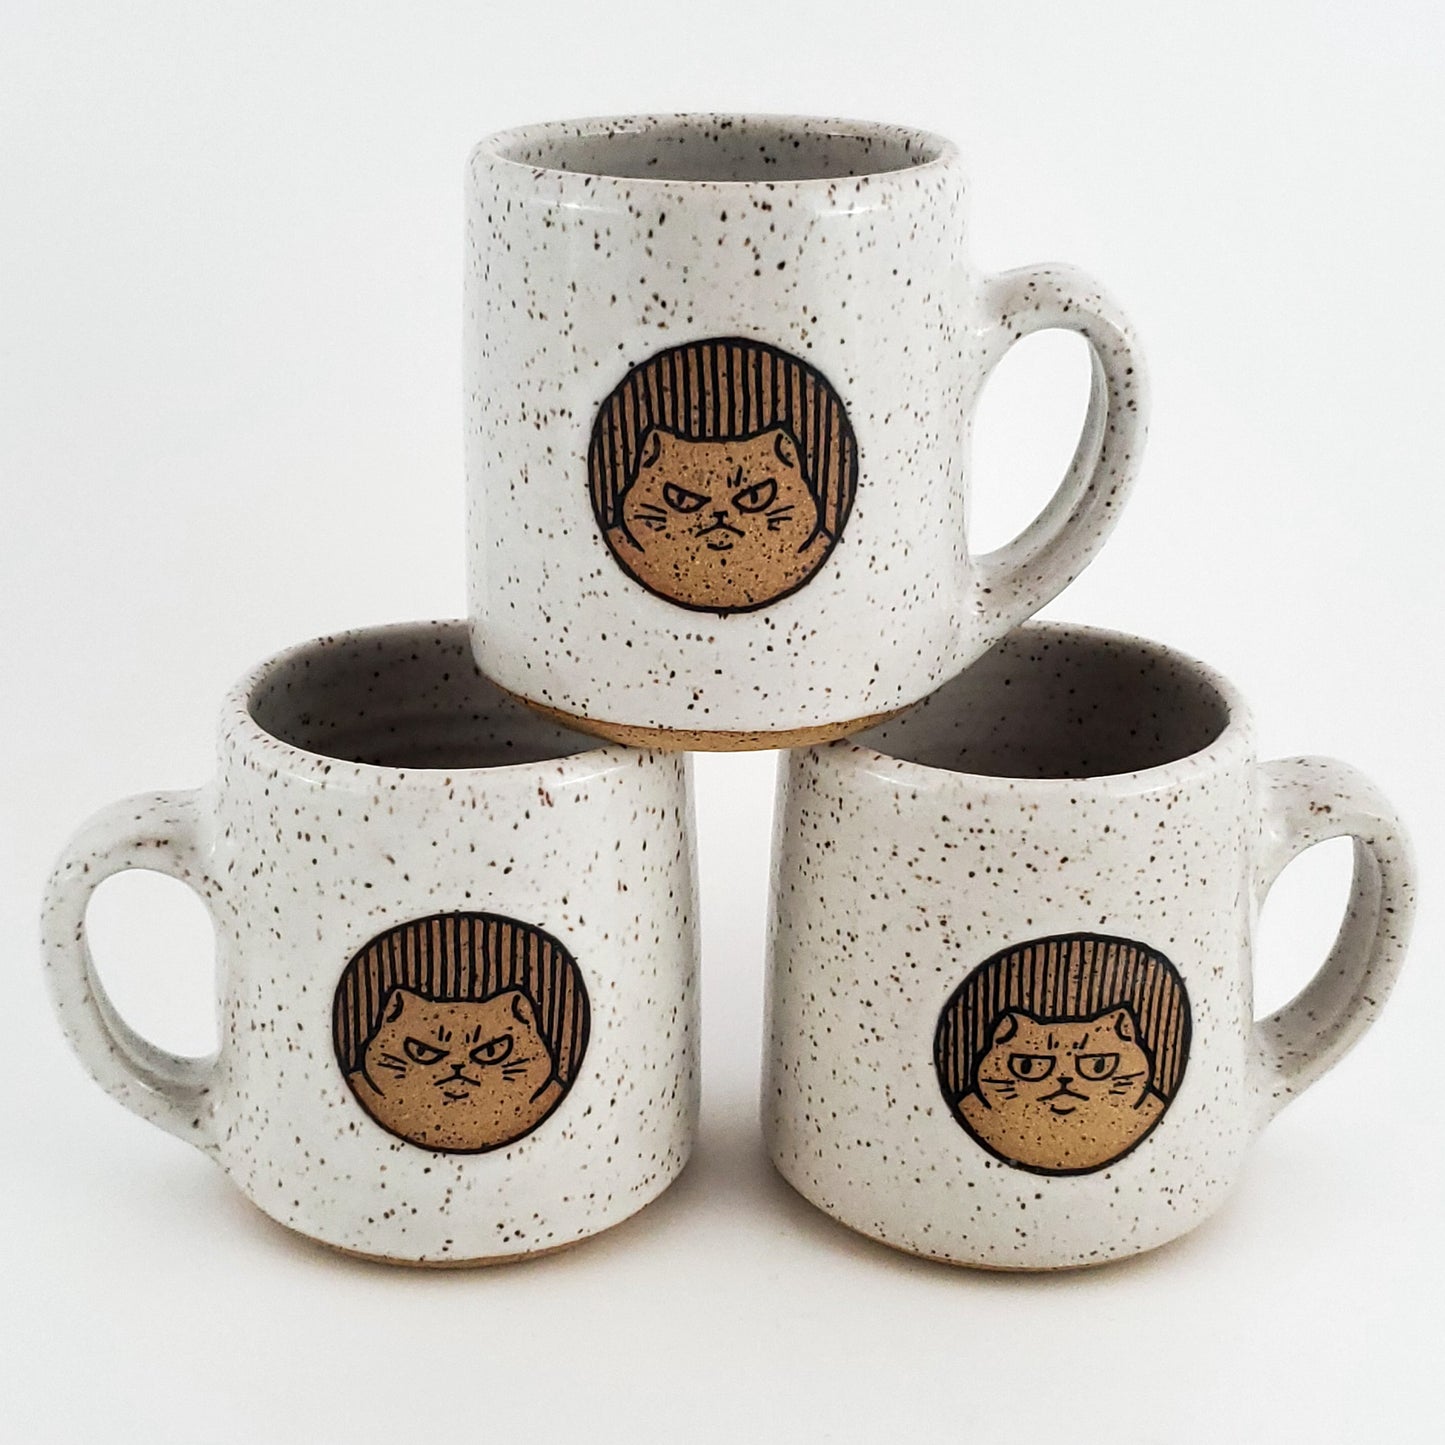 12 oz Chonky Angry Cat Mug*